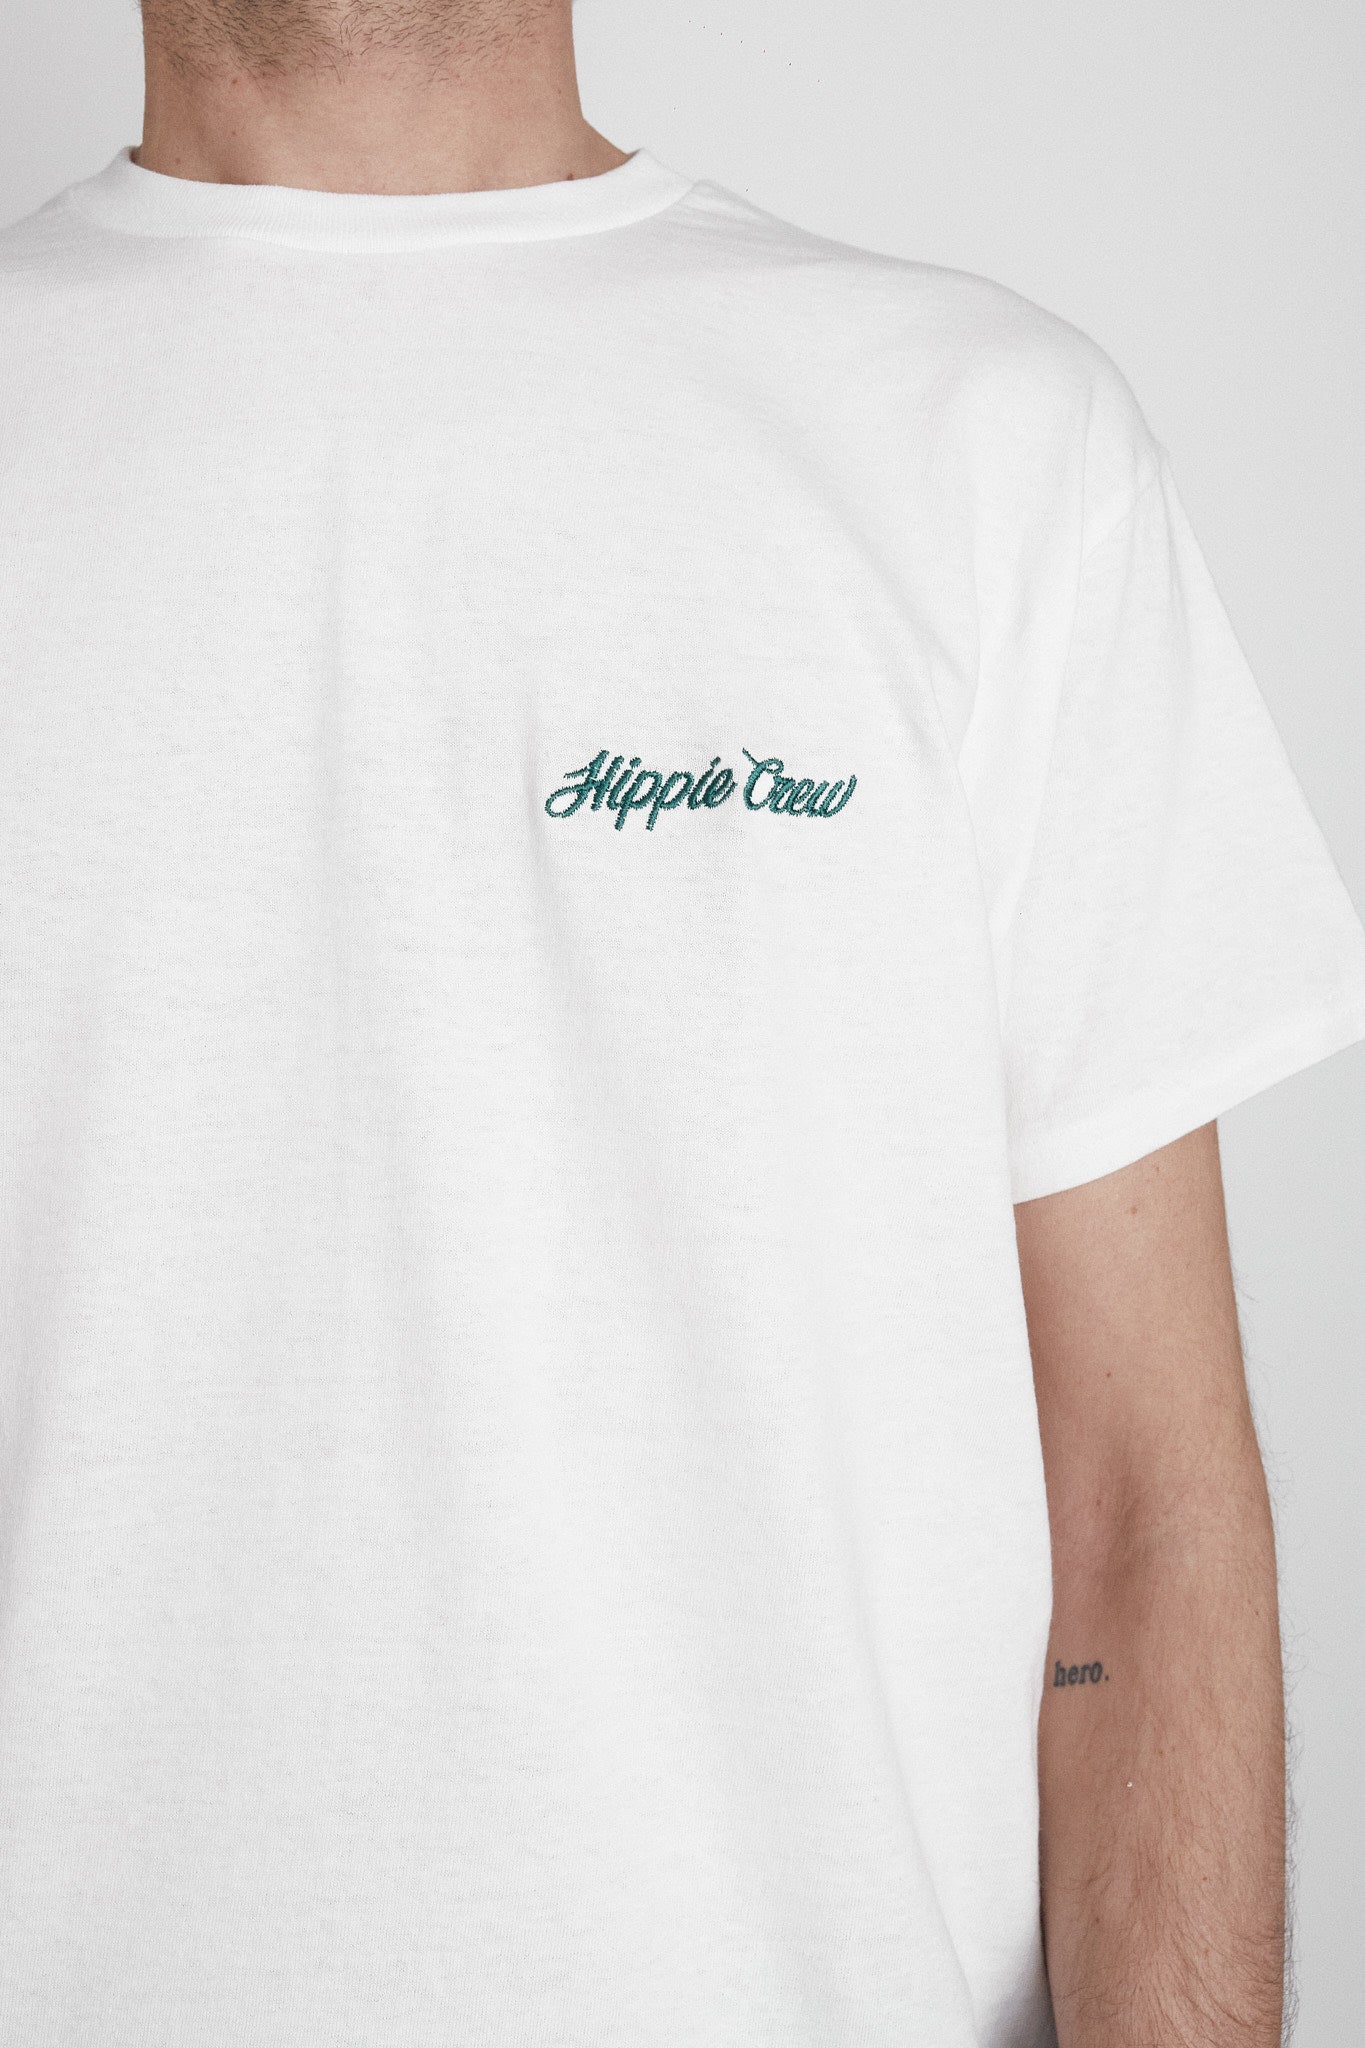 Camiseta Concept Store blanca